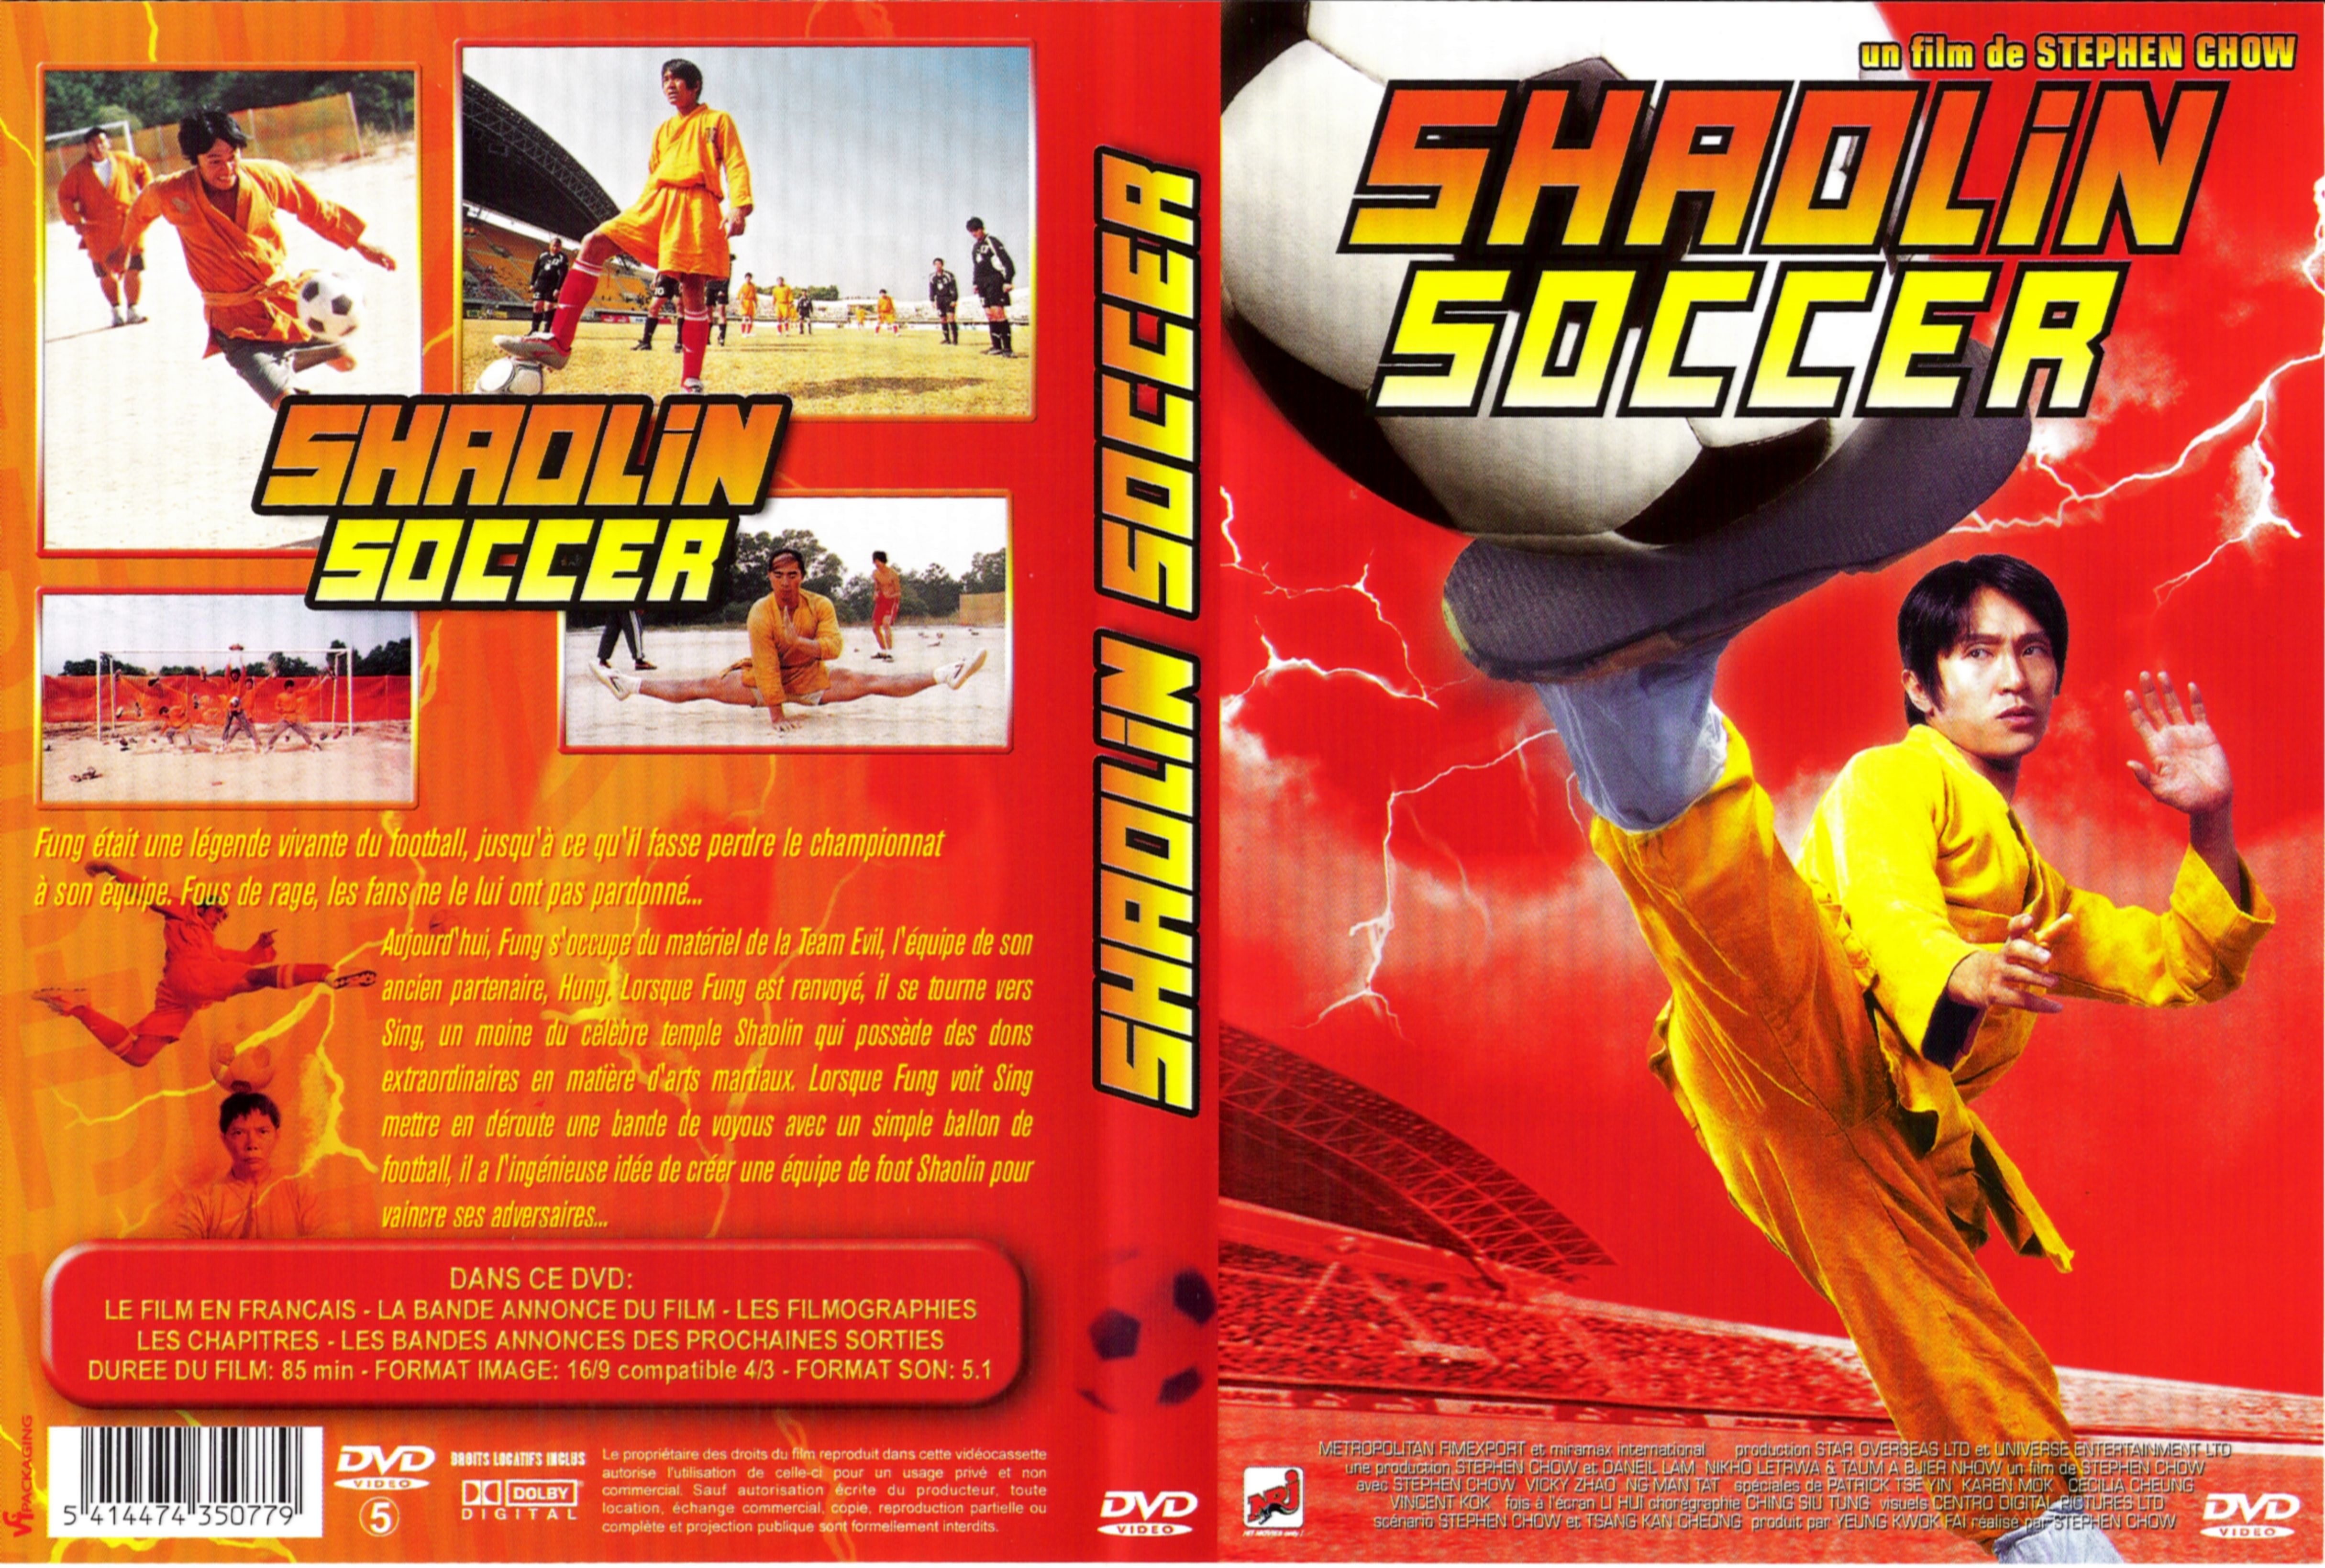 Jaquette DVD Shaolin soccer v2